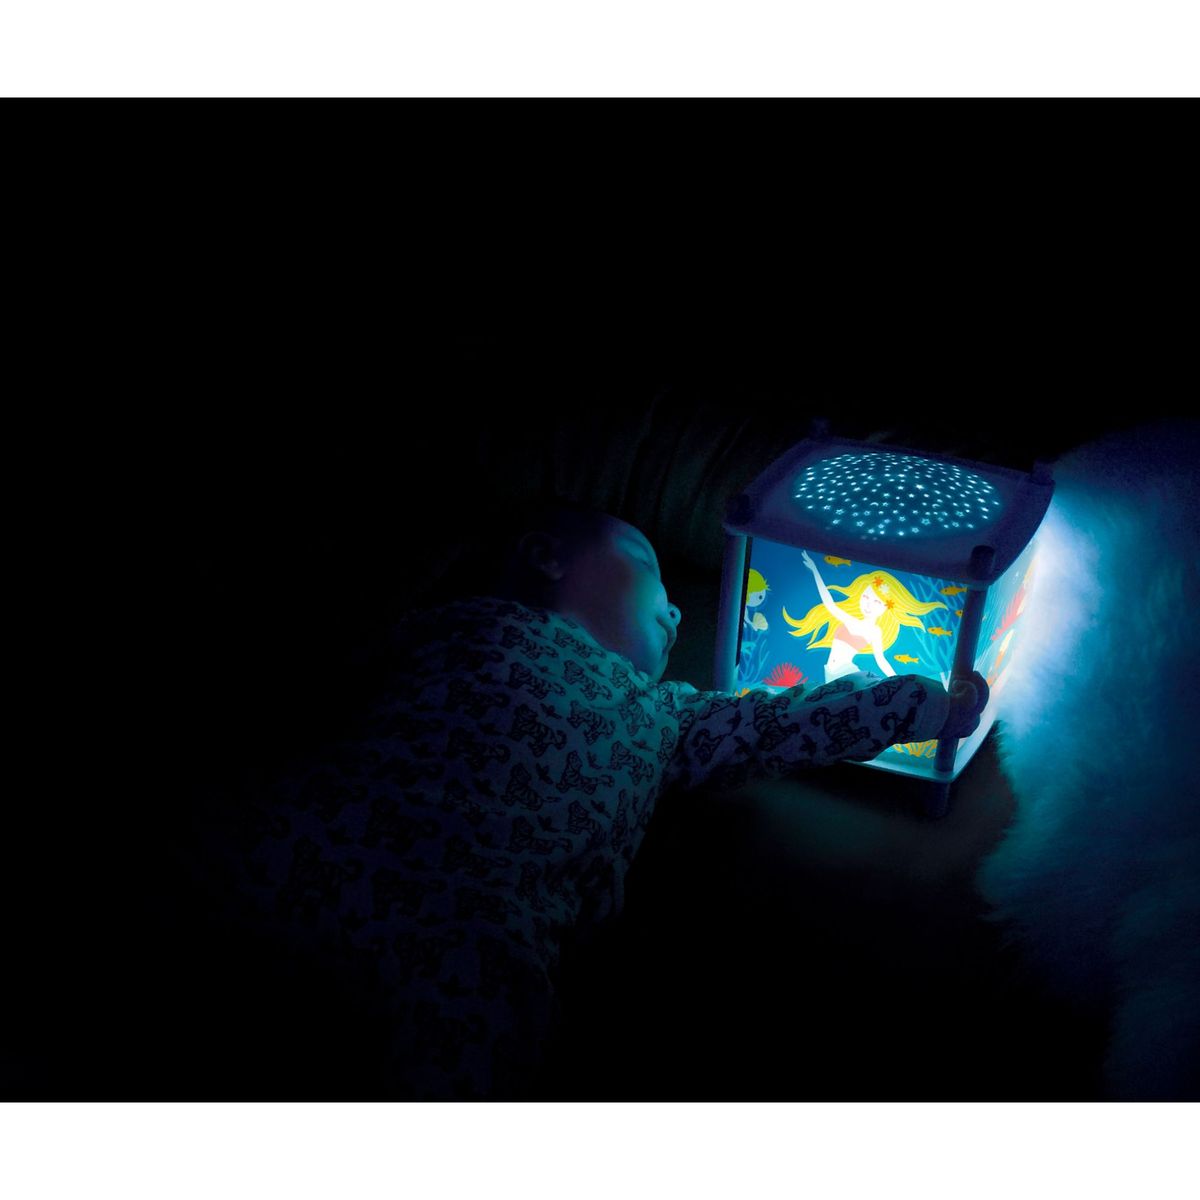 Veilleuse - lanterne révolution 2.0 - sirène - bluetooth, musicale,  détection des pleurs & usb rechargeable - trousselier v002226 Trousselier